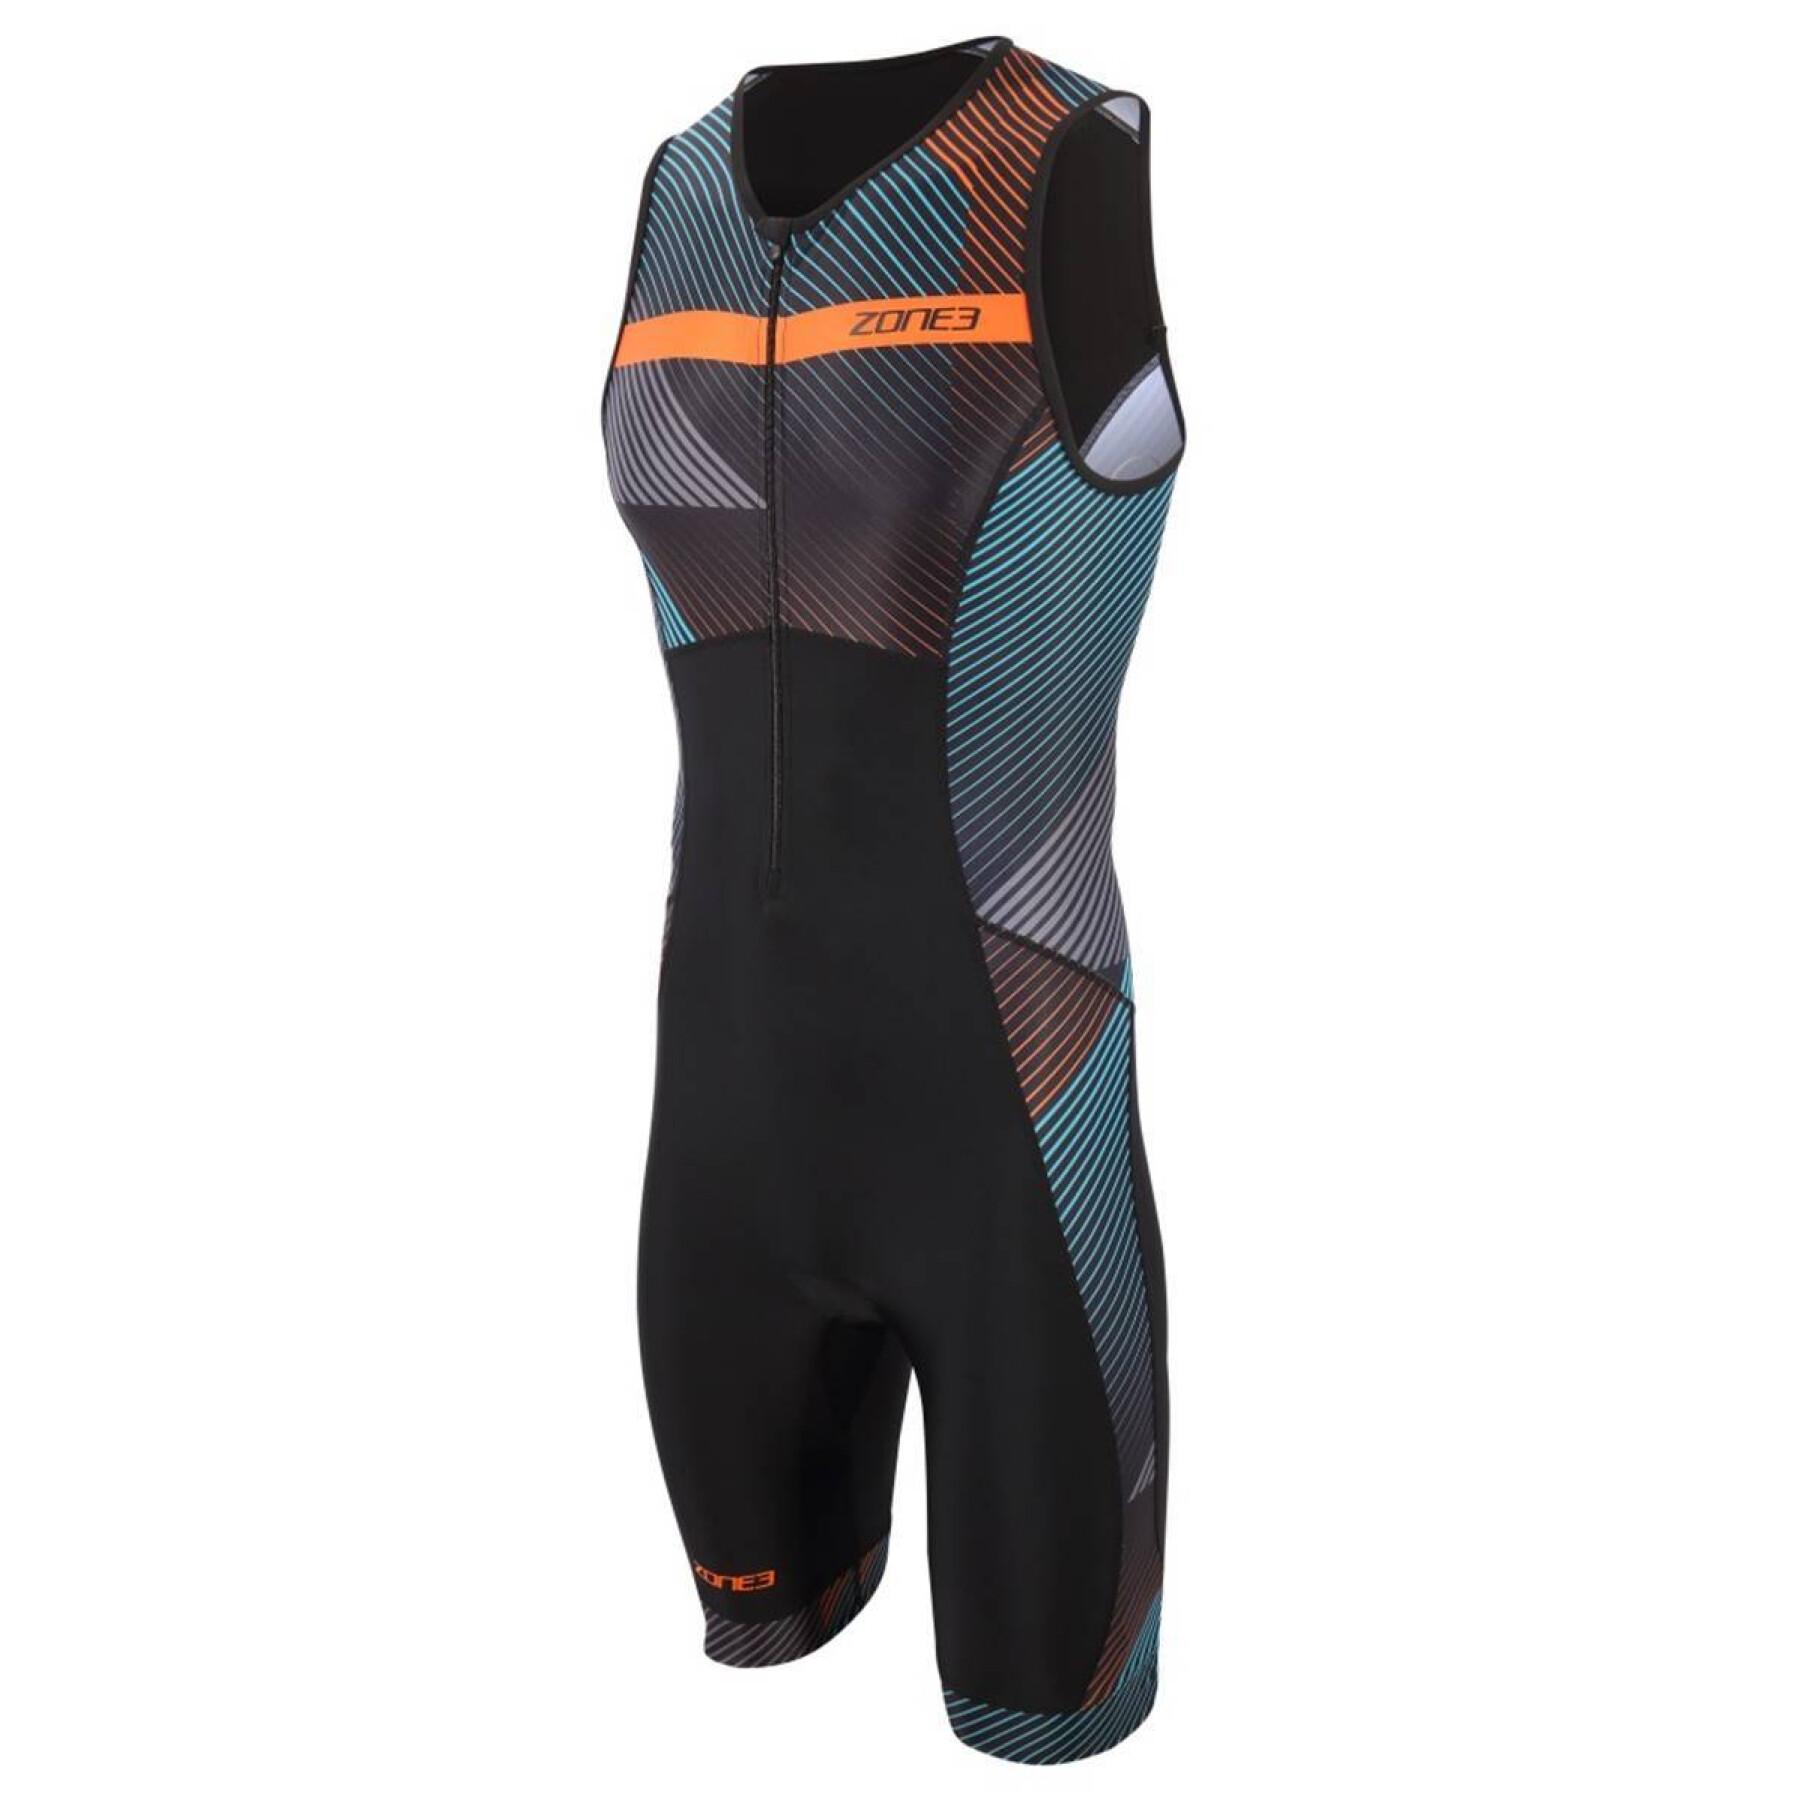 Sleeveless triathlon suit Zone3 Activate+ Momentum Trisuit